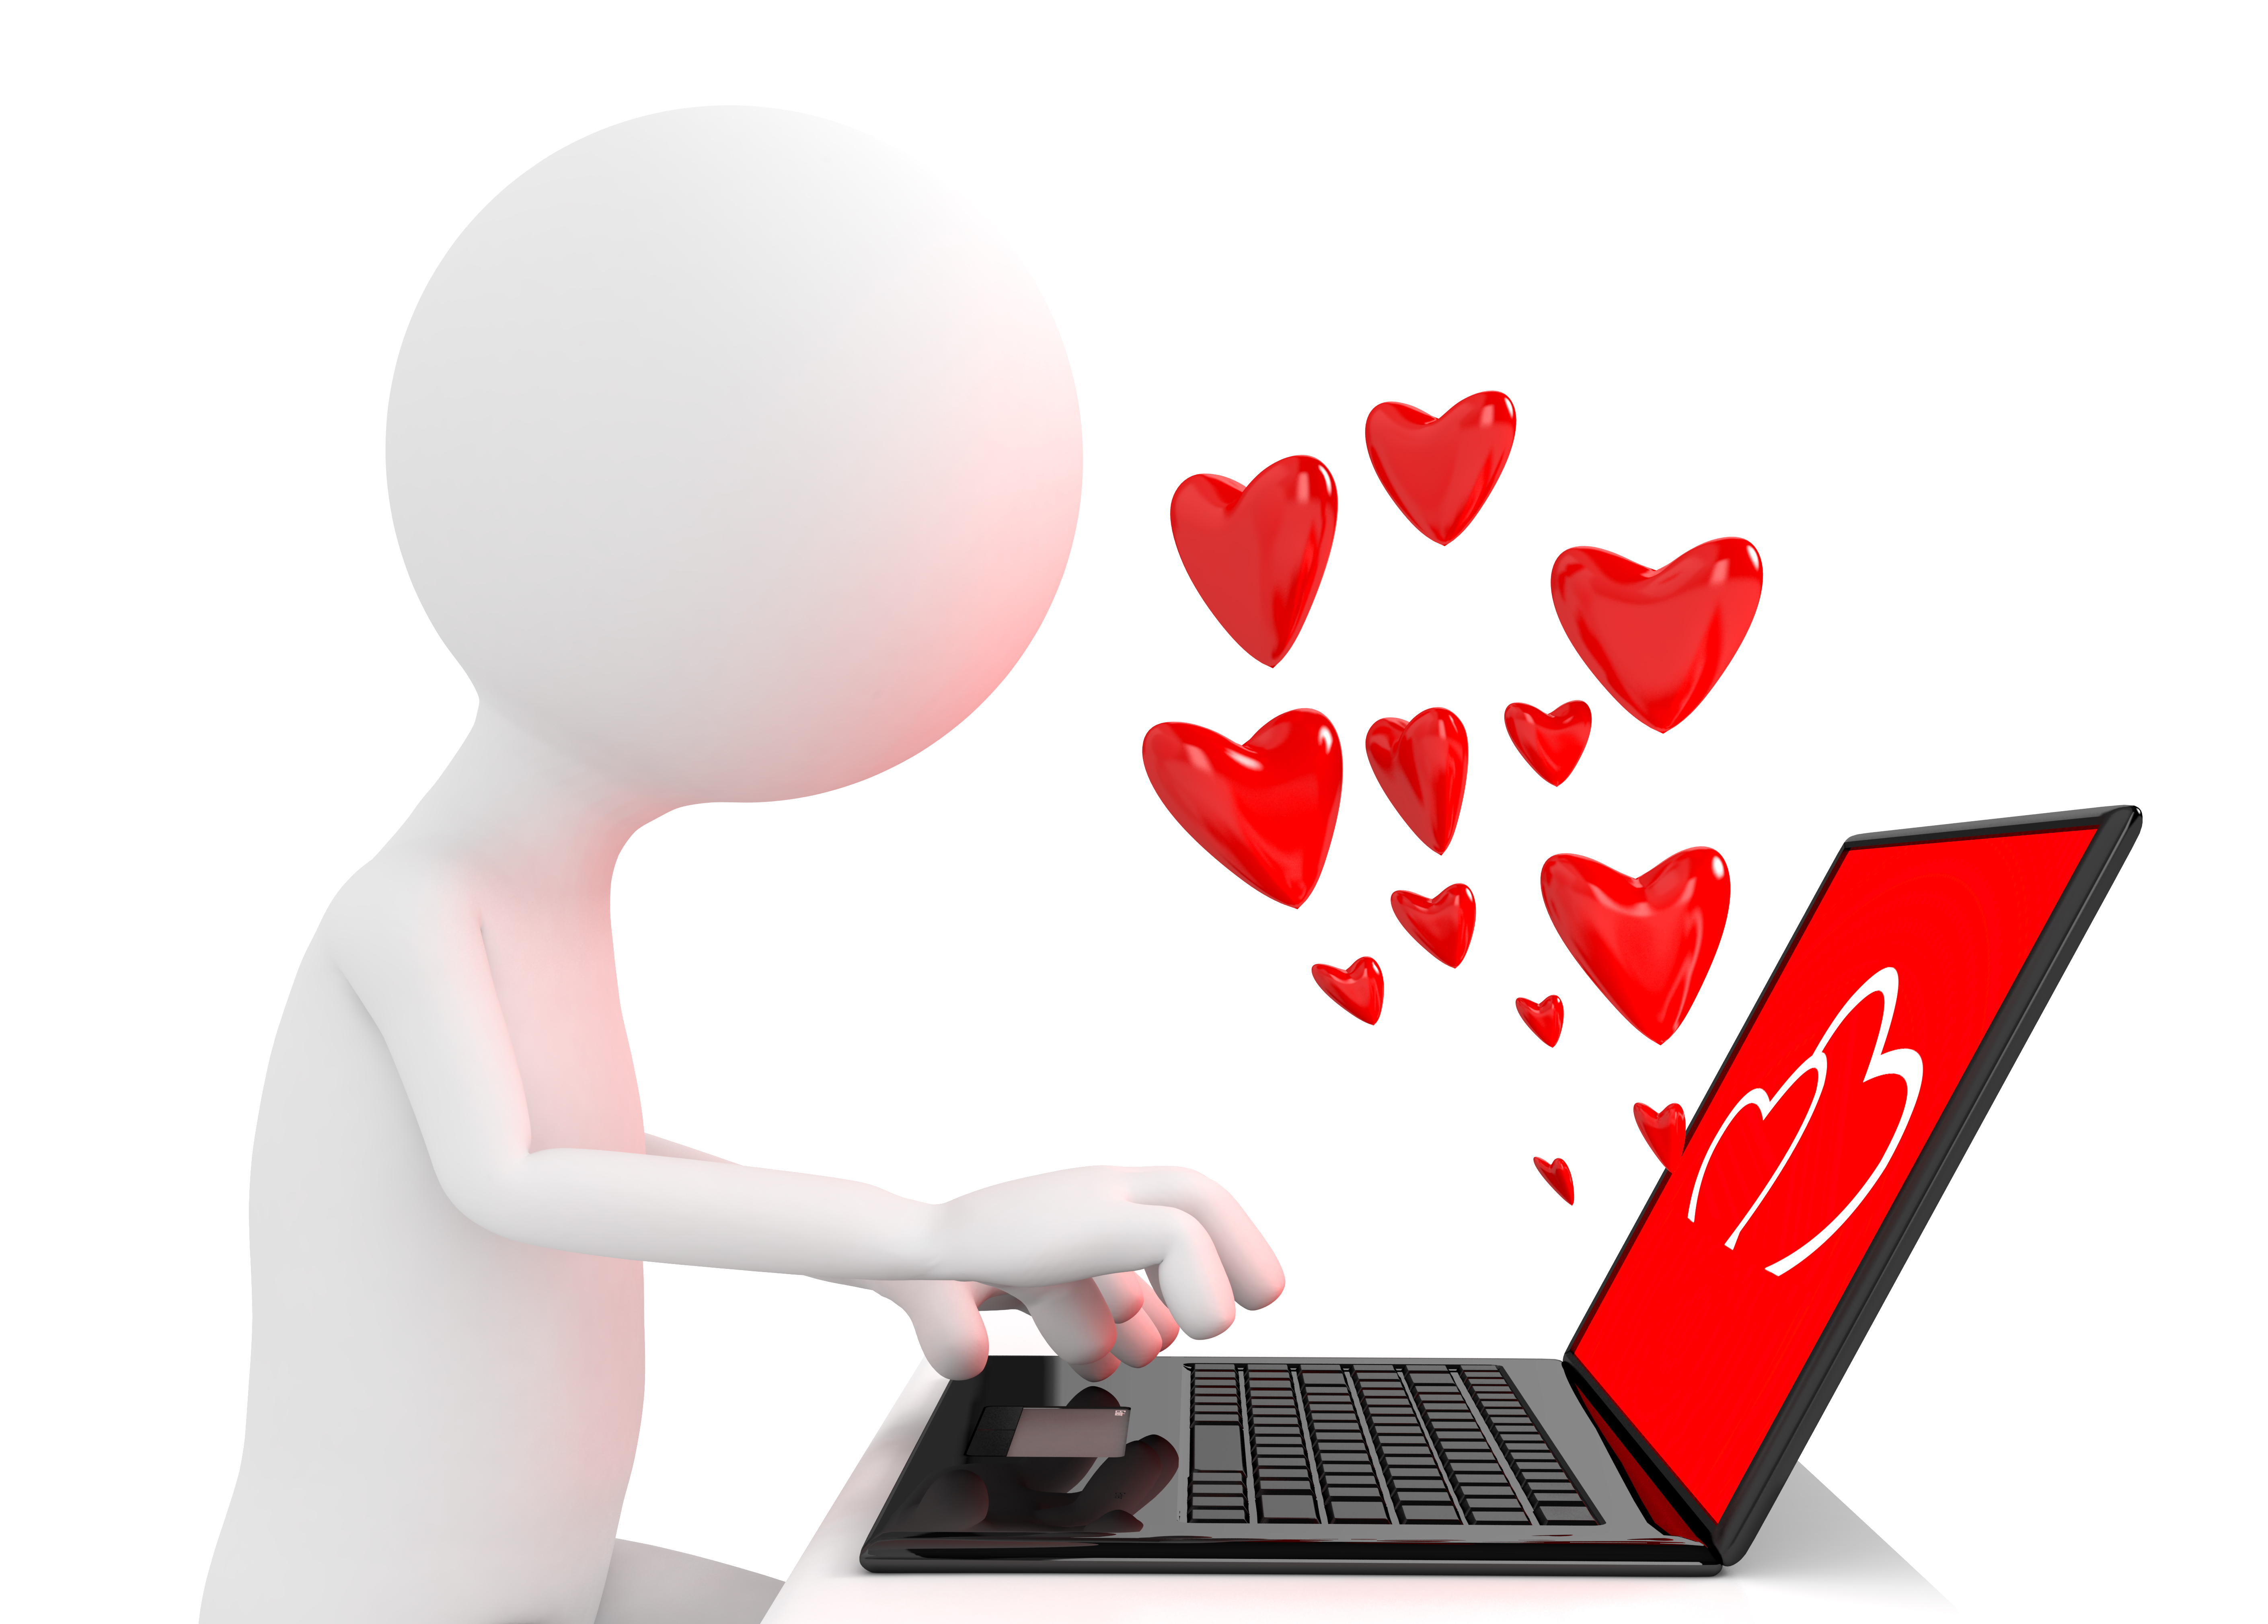 Online-fetisch-dating-sites